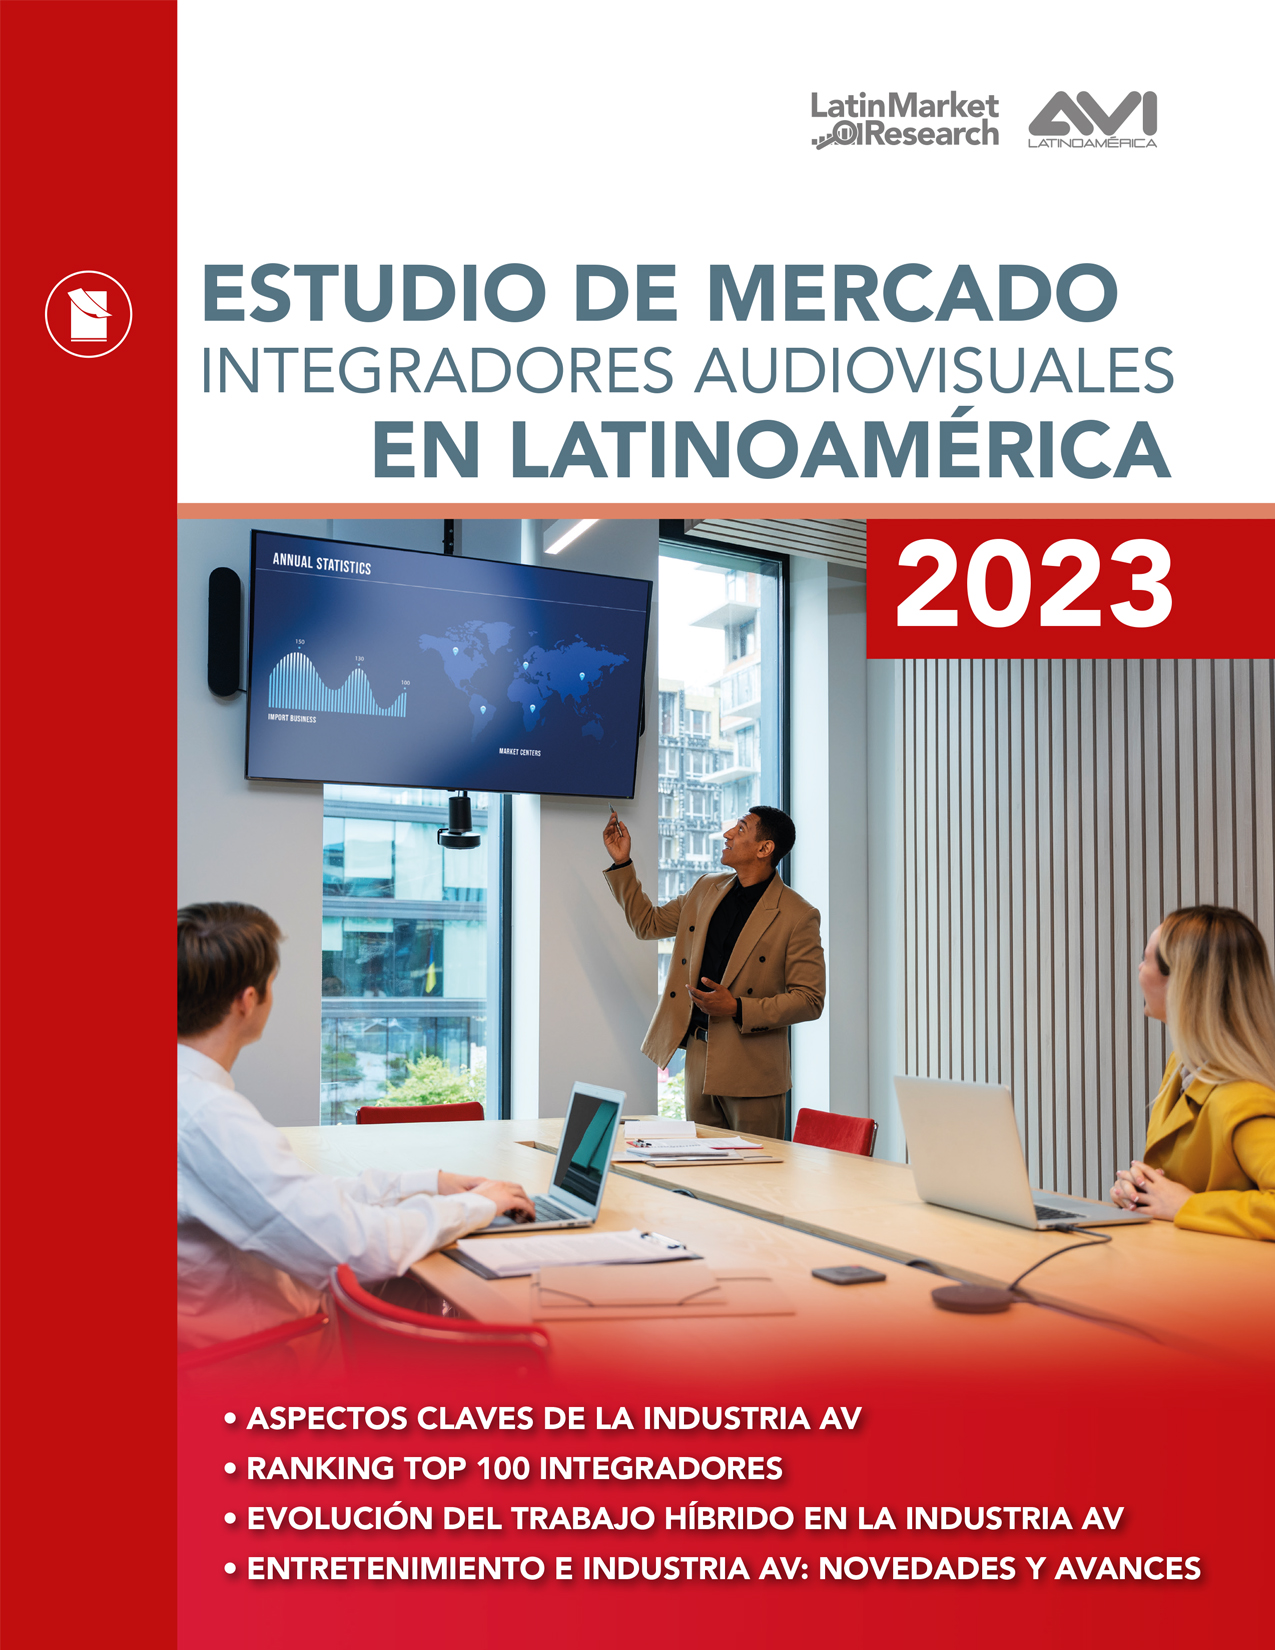 ESTUDIO DE MERCADO INTEGRADORES AUDIOVISUALES EN LATINOAMÉRICA 2023